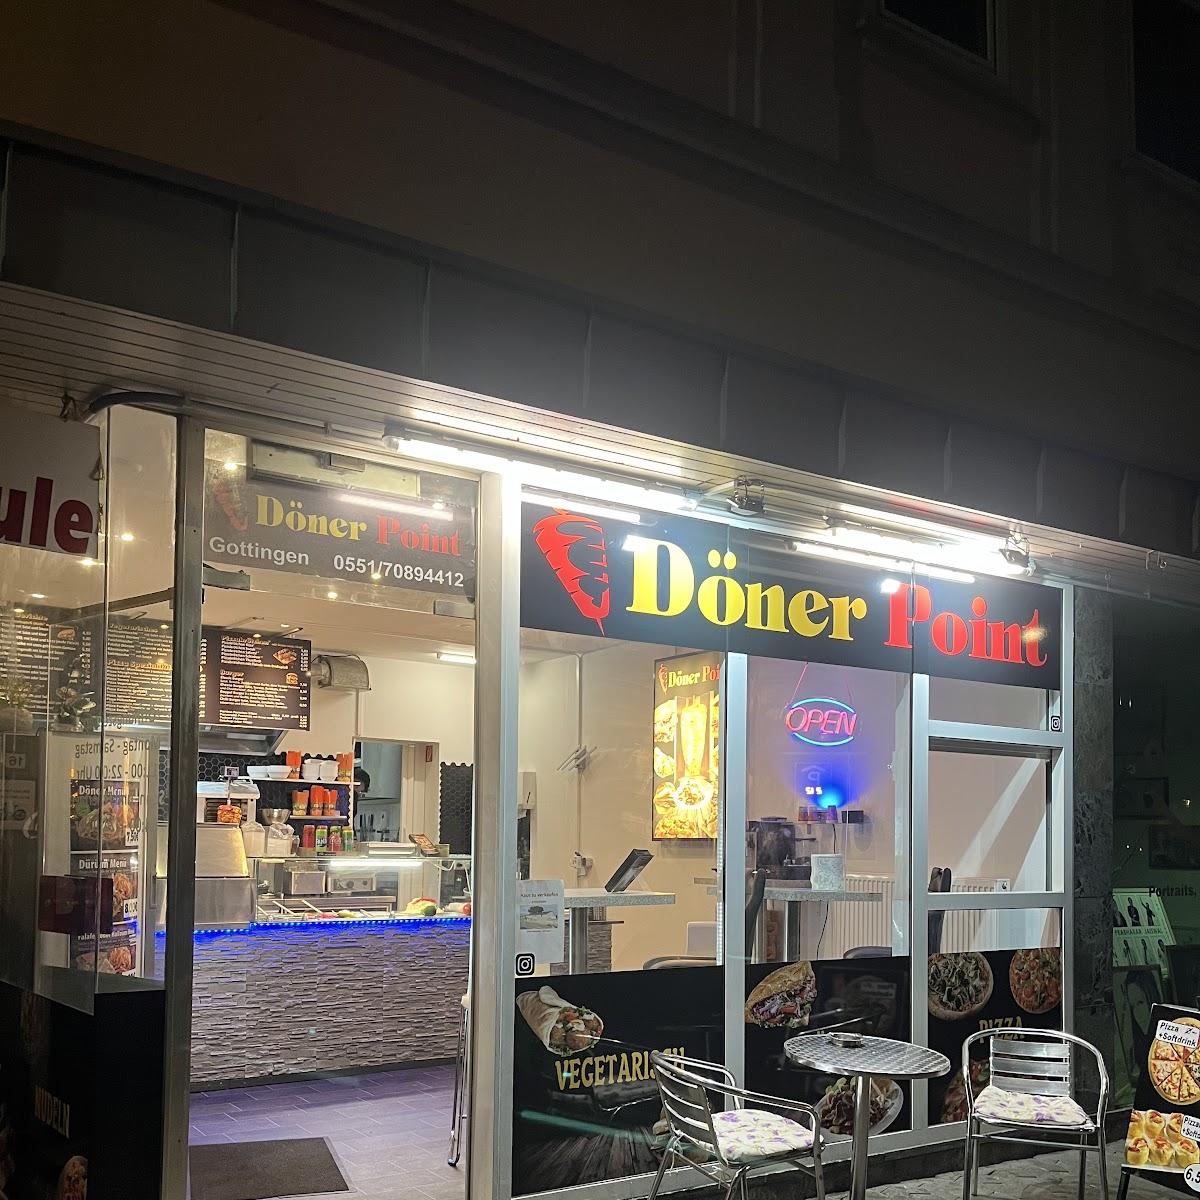 Restaurant "Döner Point" in Göttingen